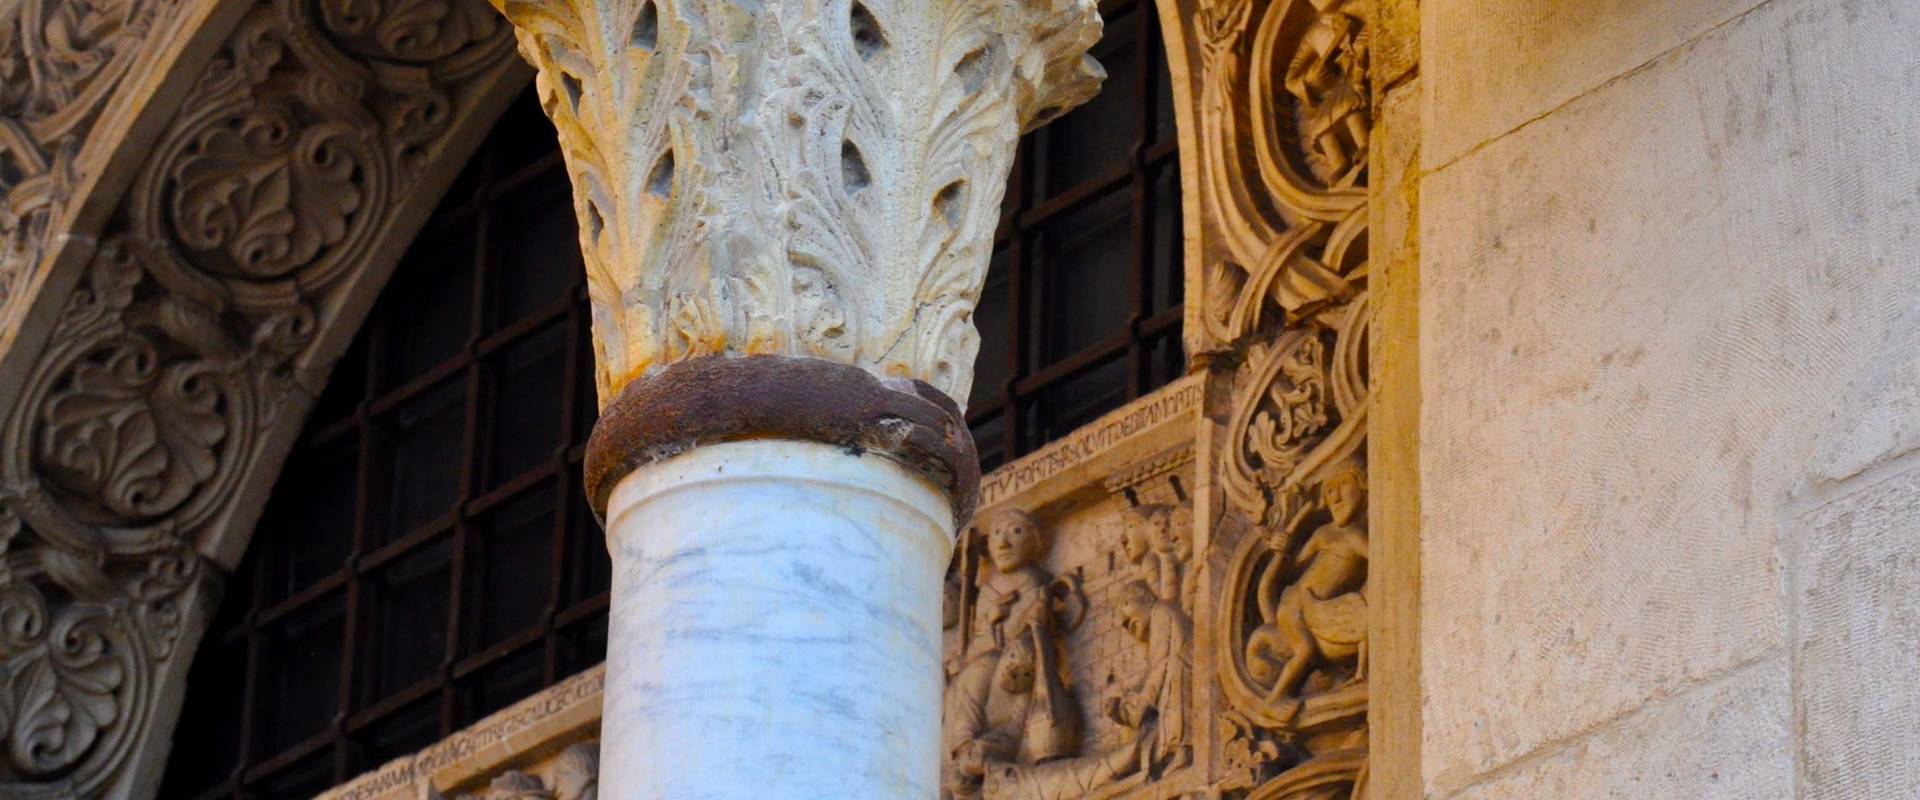 Capitello Duomo di Modena, e scorcio Porta dei Principi photo by Chiara Salazar Chiesa